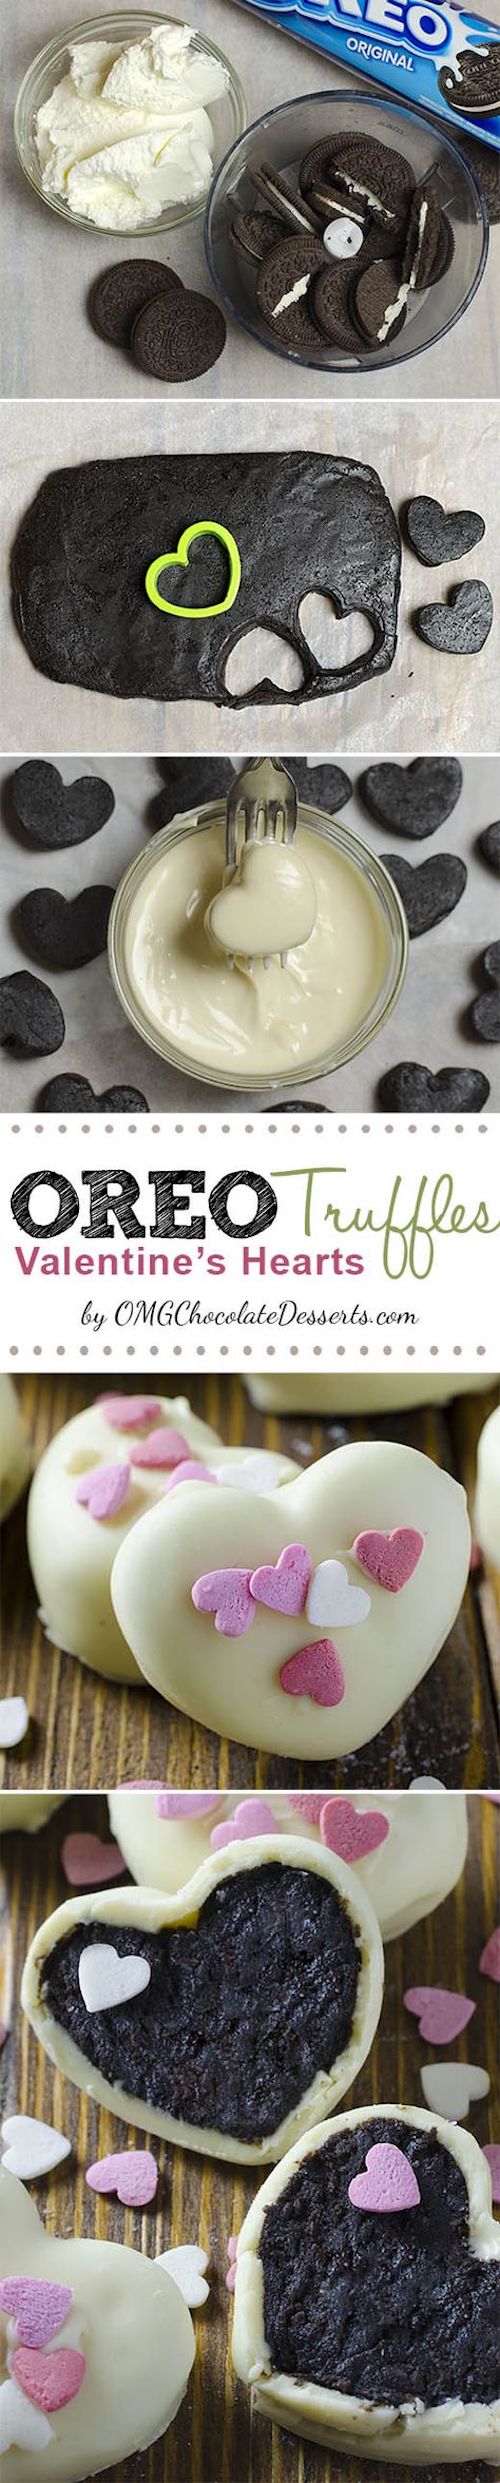 Oreo Truffles Valentine’s Hearts. 